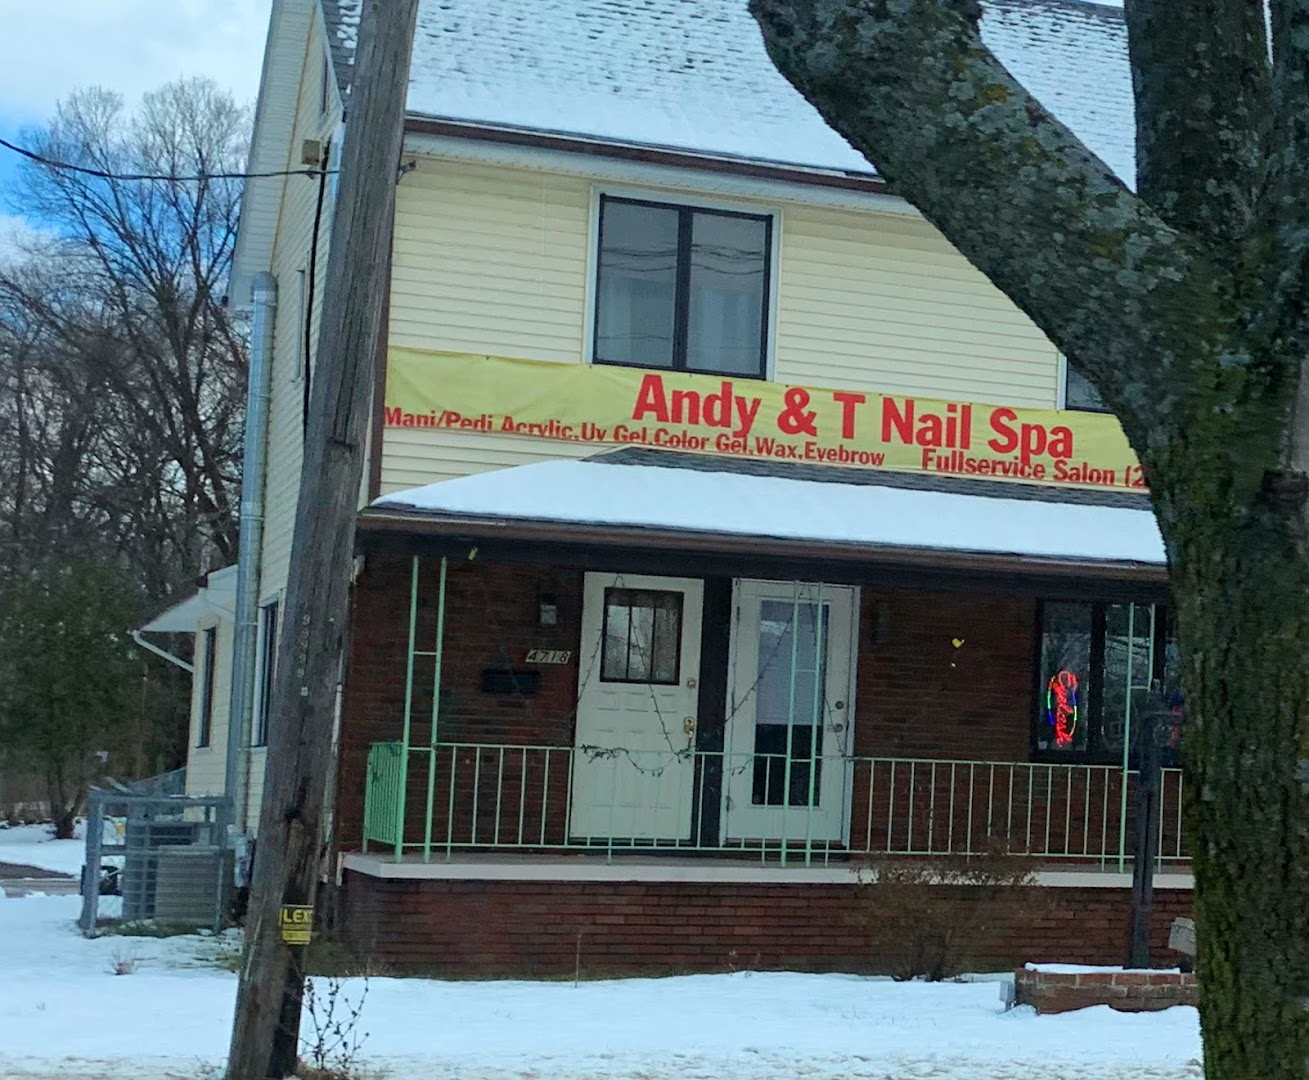 Andy & T Nail Spa